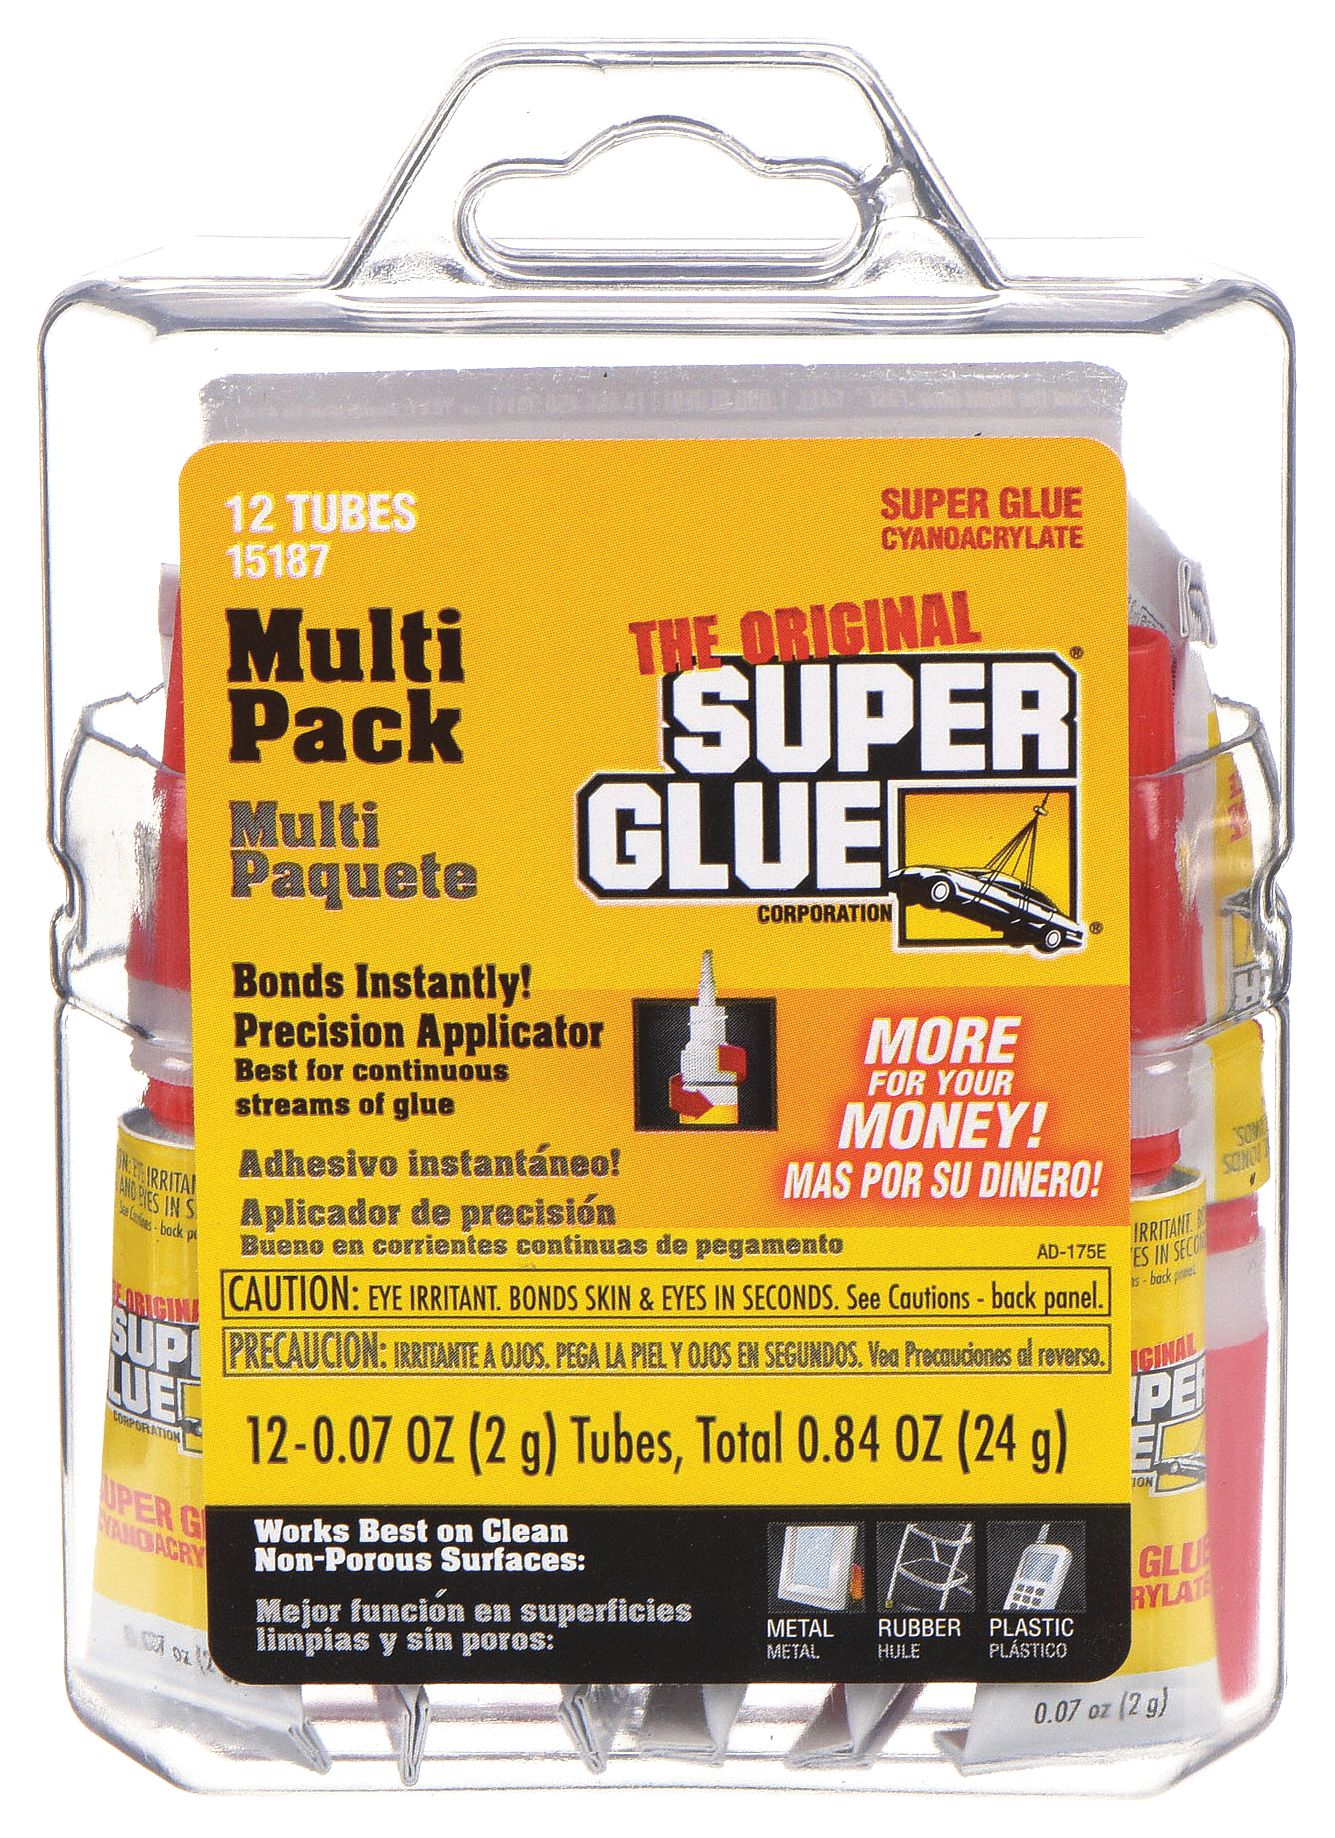 SUPER GLUE, Original, Gen Purpose, Instant Adhesive - 3EHP1